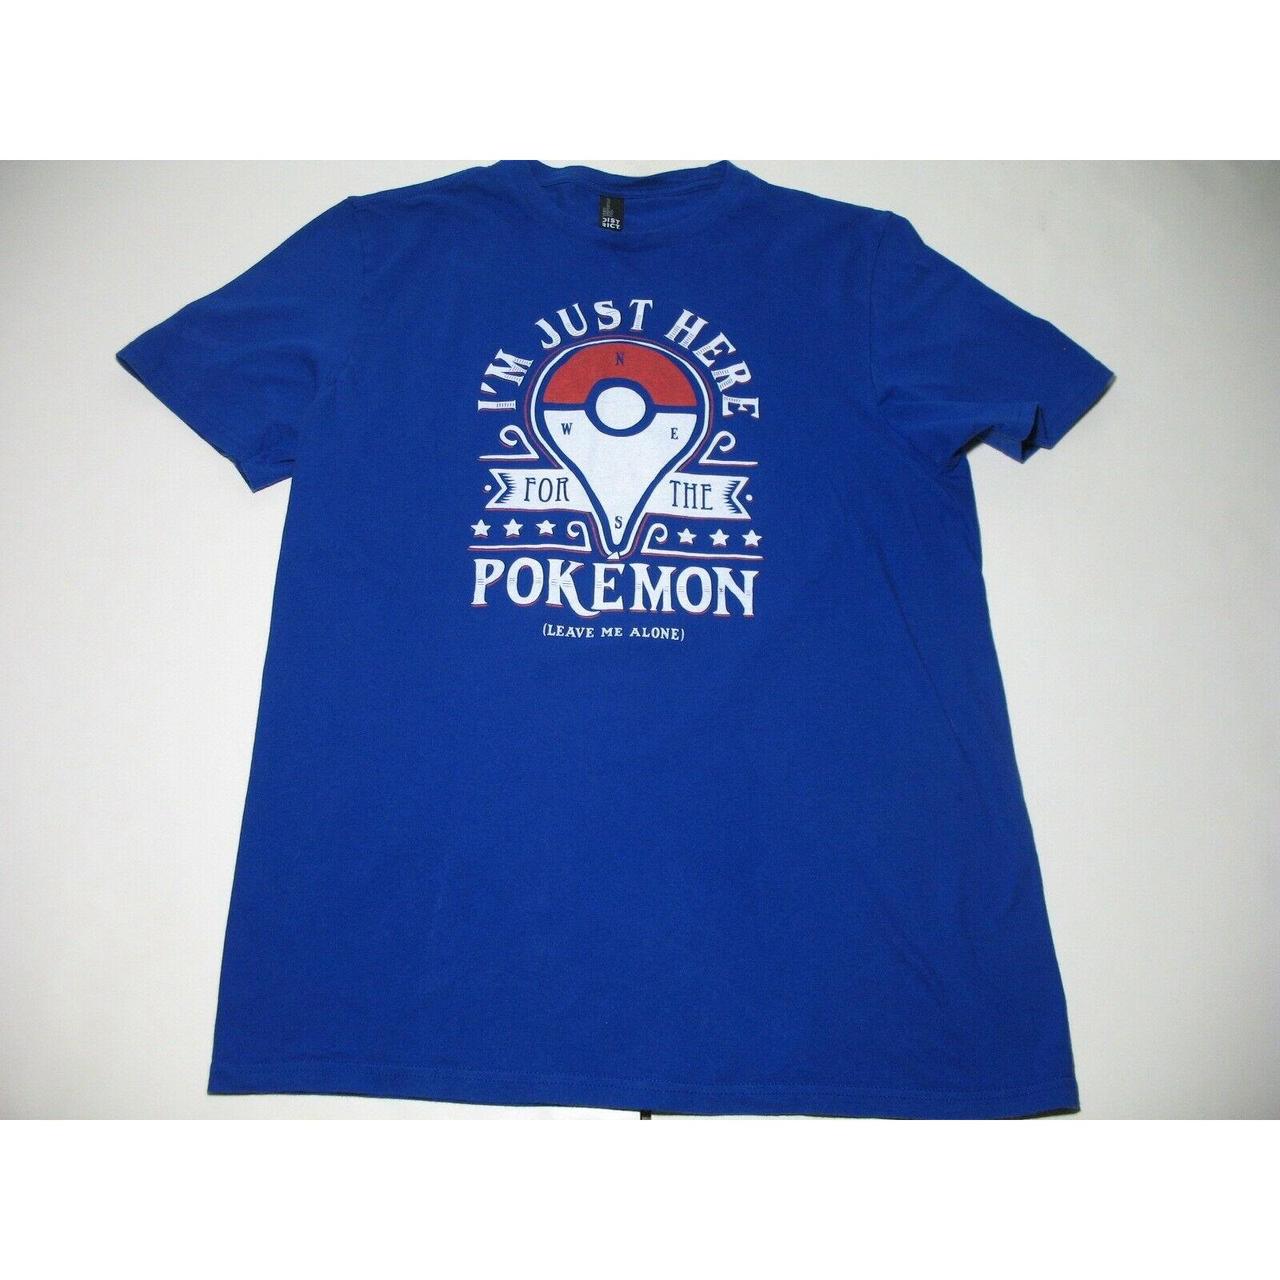 Product Image 1 - Pokemon Adult Blue T-Shirt Size